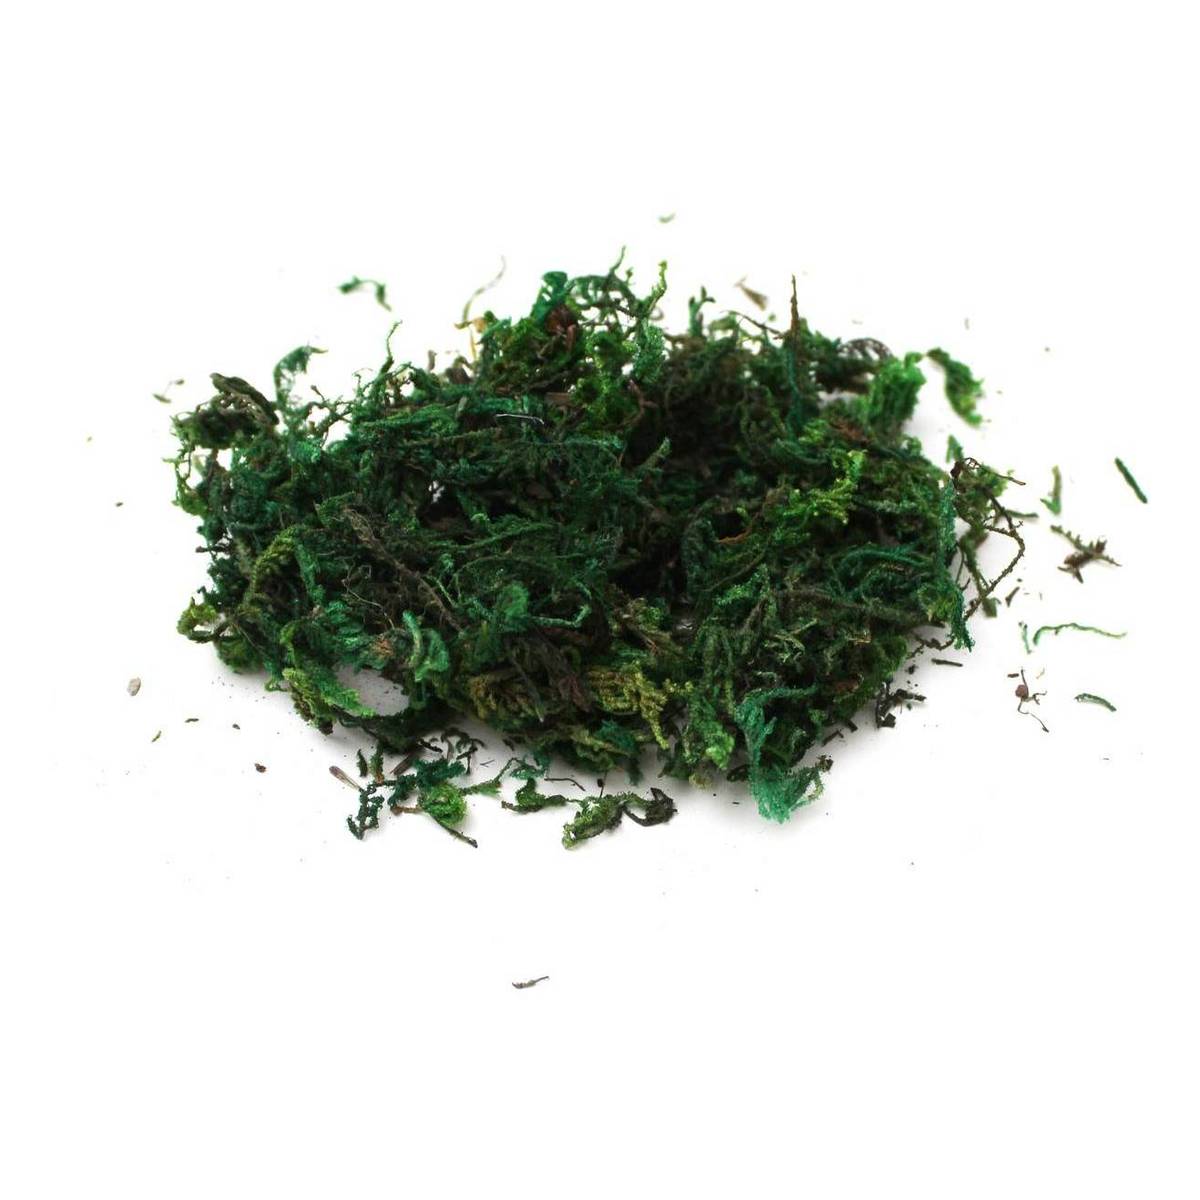 Buy Green Moss 40g for GBP 3.00 | Hobbycraft UK